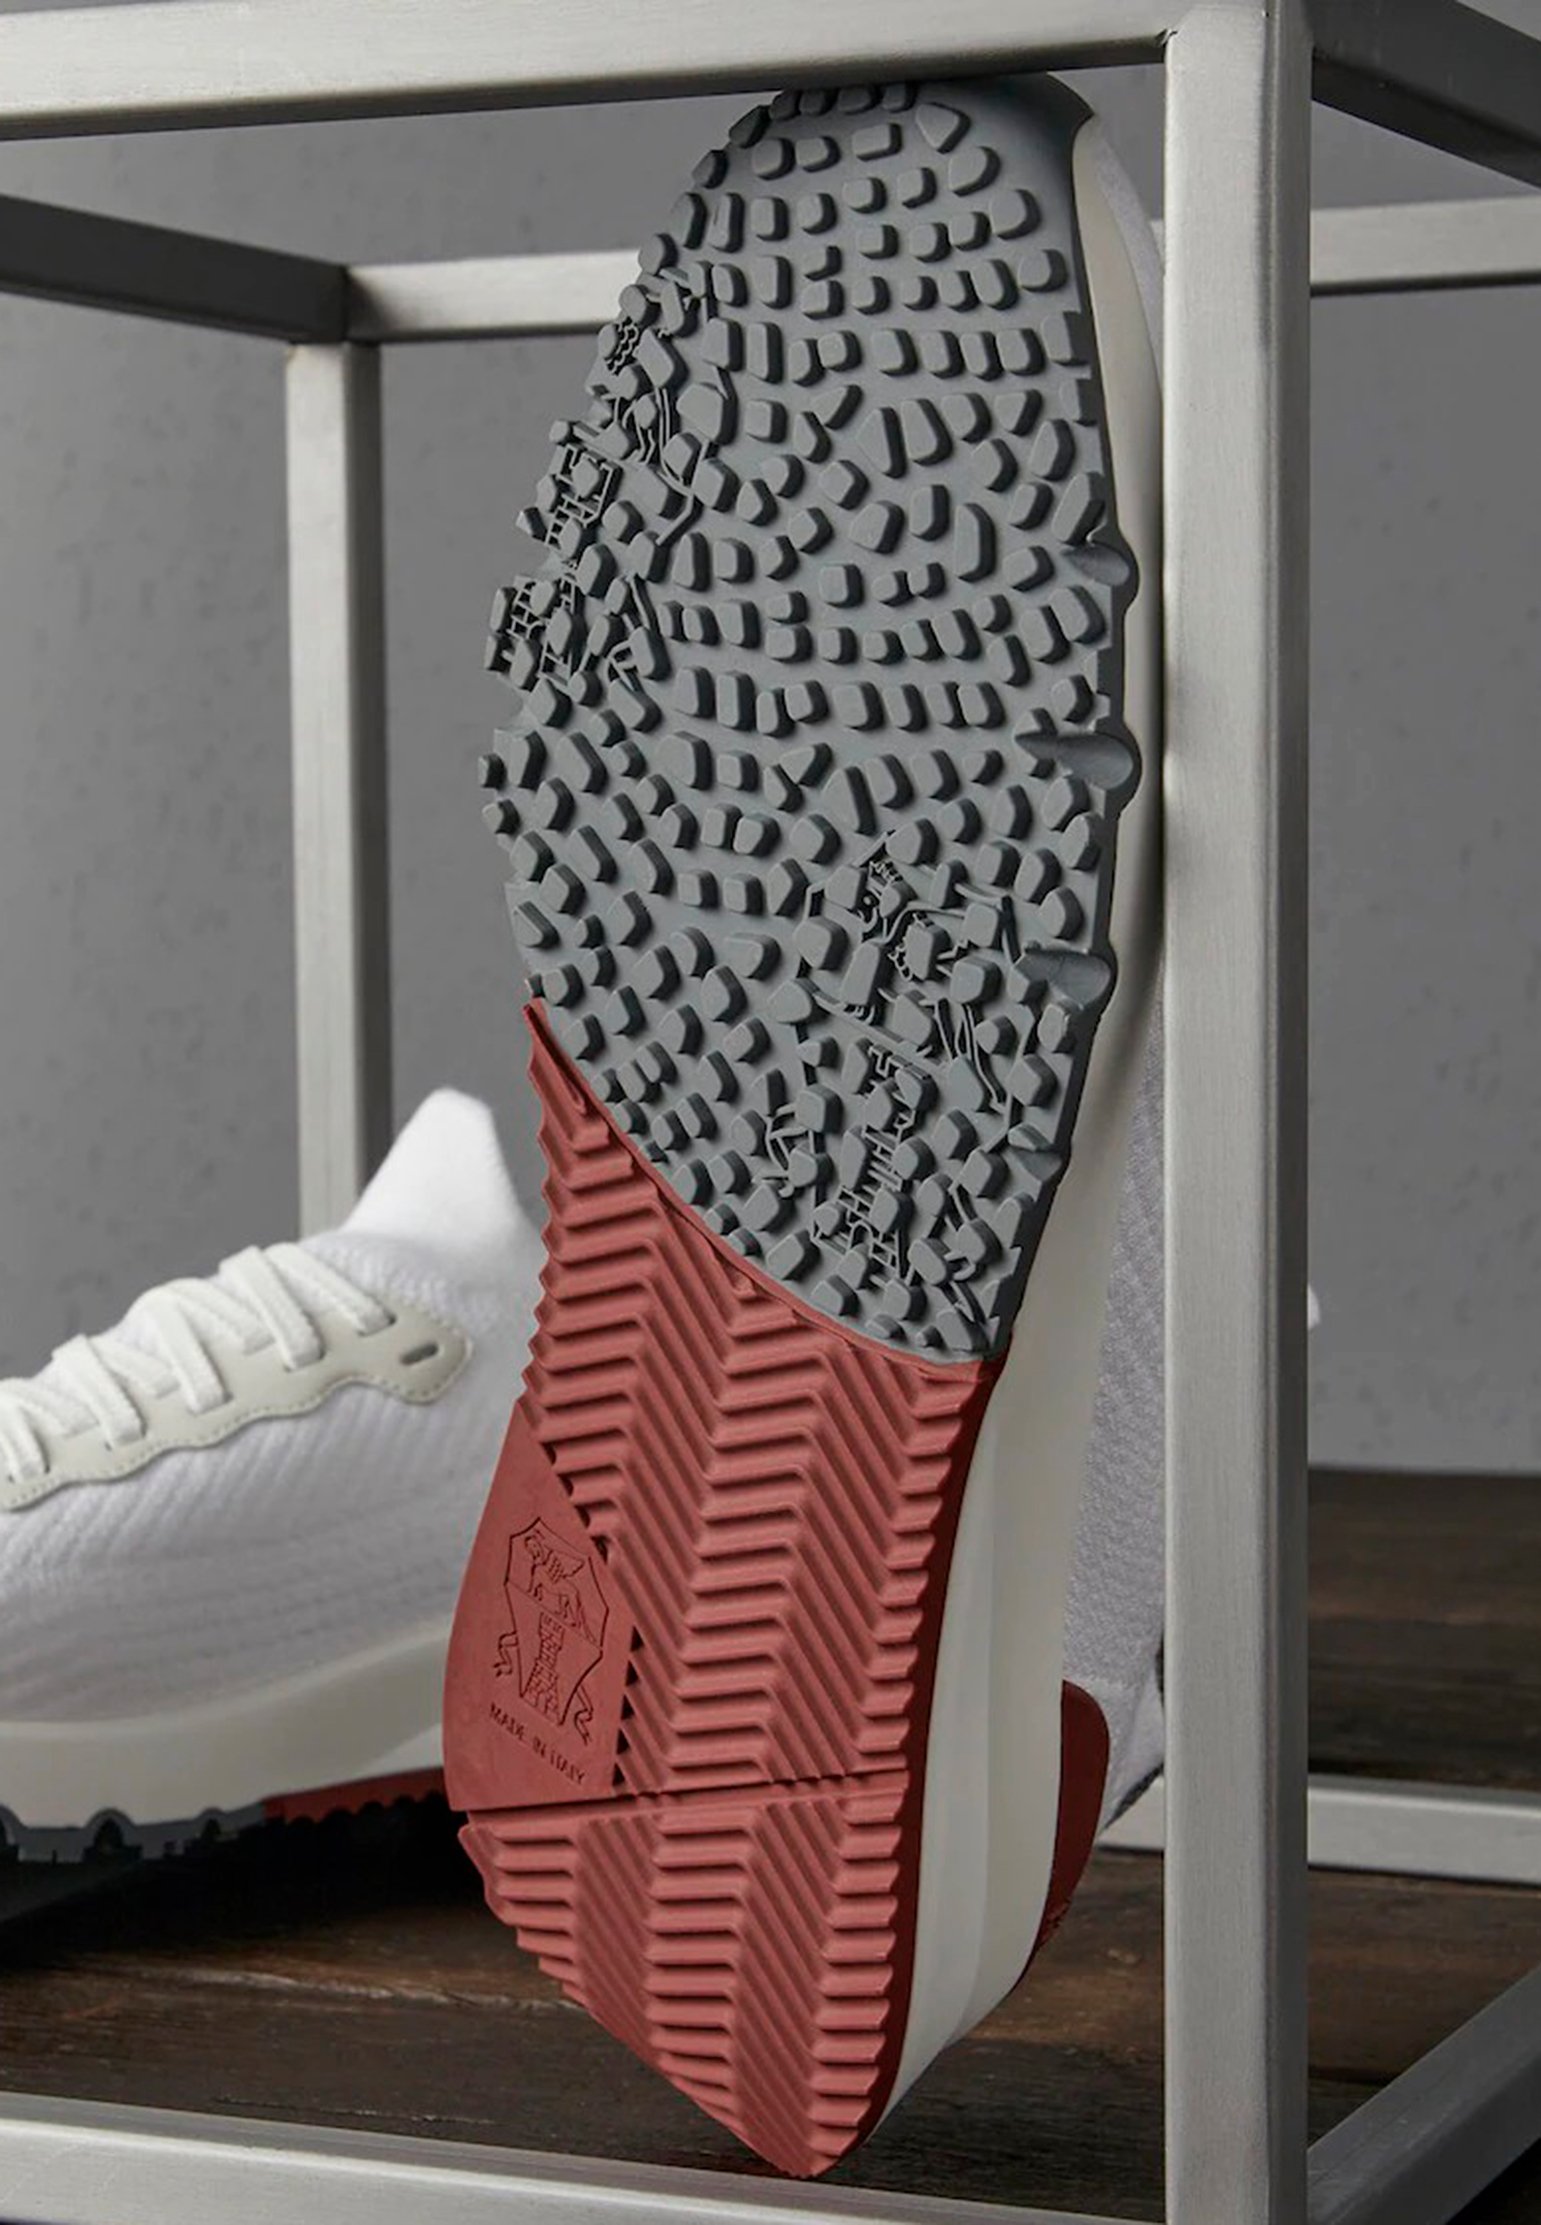 Sneakers BRUNELLO CUCINELLI Color: white (Code: 1478) in online store Allure